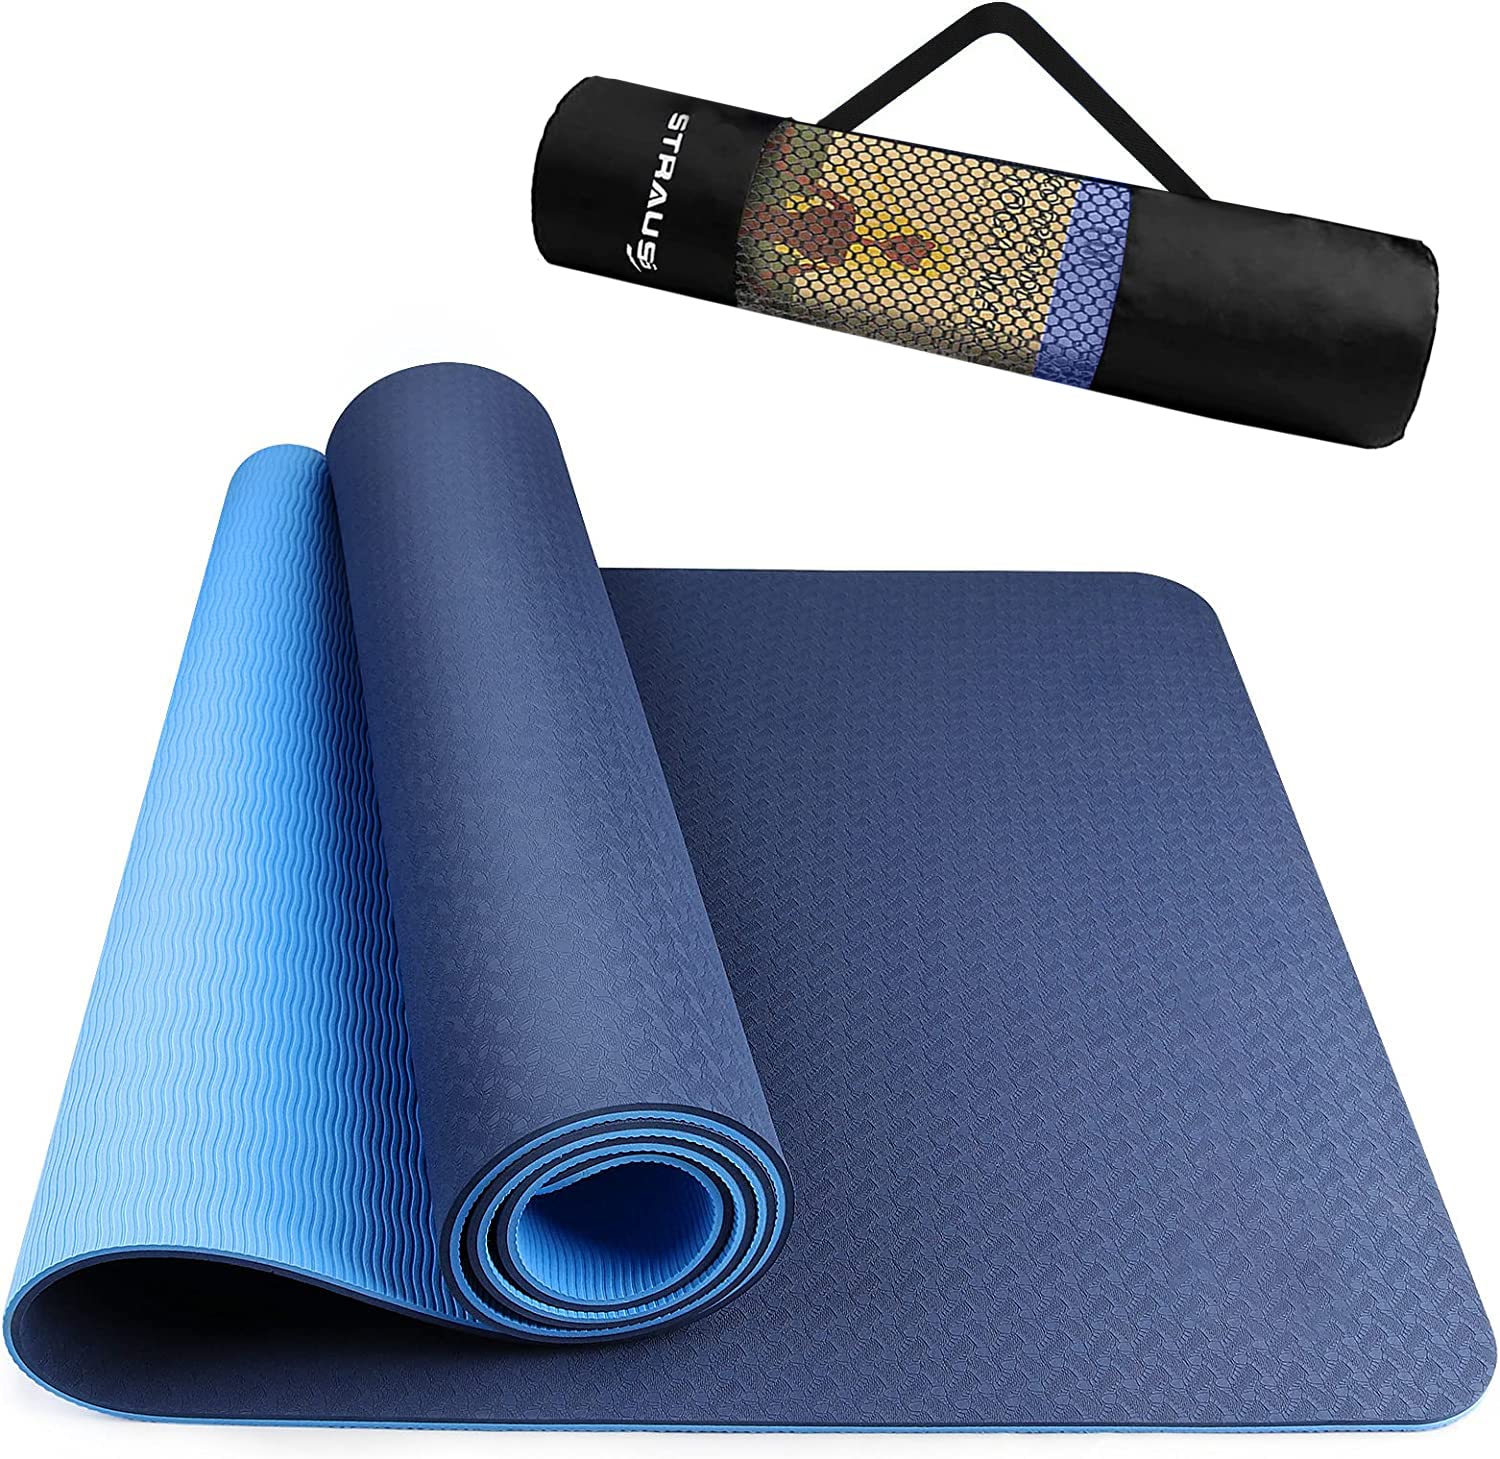 Buy NATURES PLUS Yoga Mat 6 Mm - Blue, EVA Material Online at Best